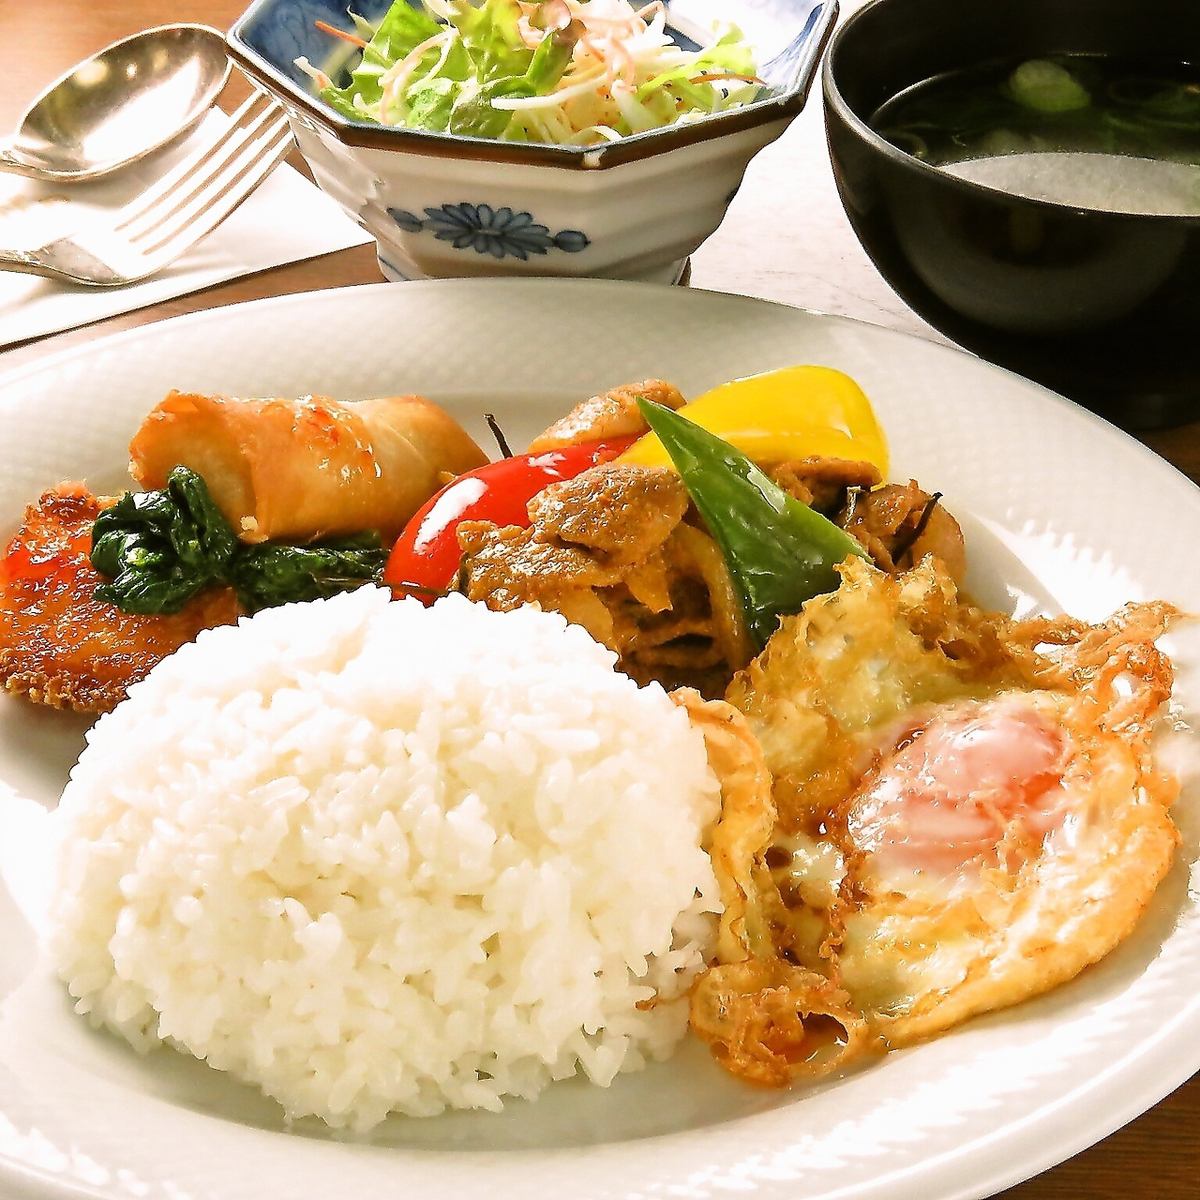 히로시마에서 본고장 태국 요리를 즐길 때 인기 레스토랑.태국 음식이 먹고 싶어지면 코코